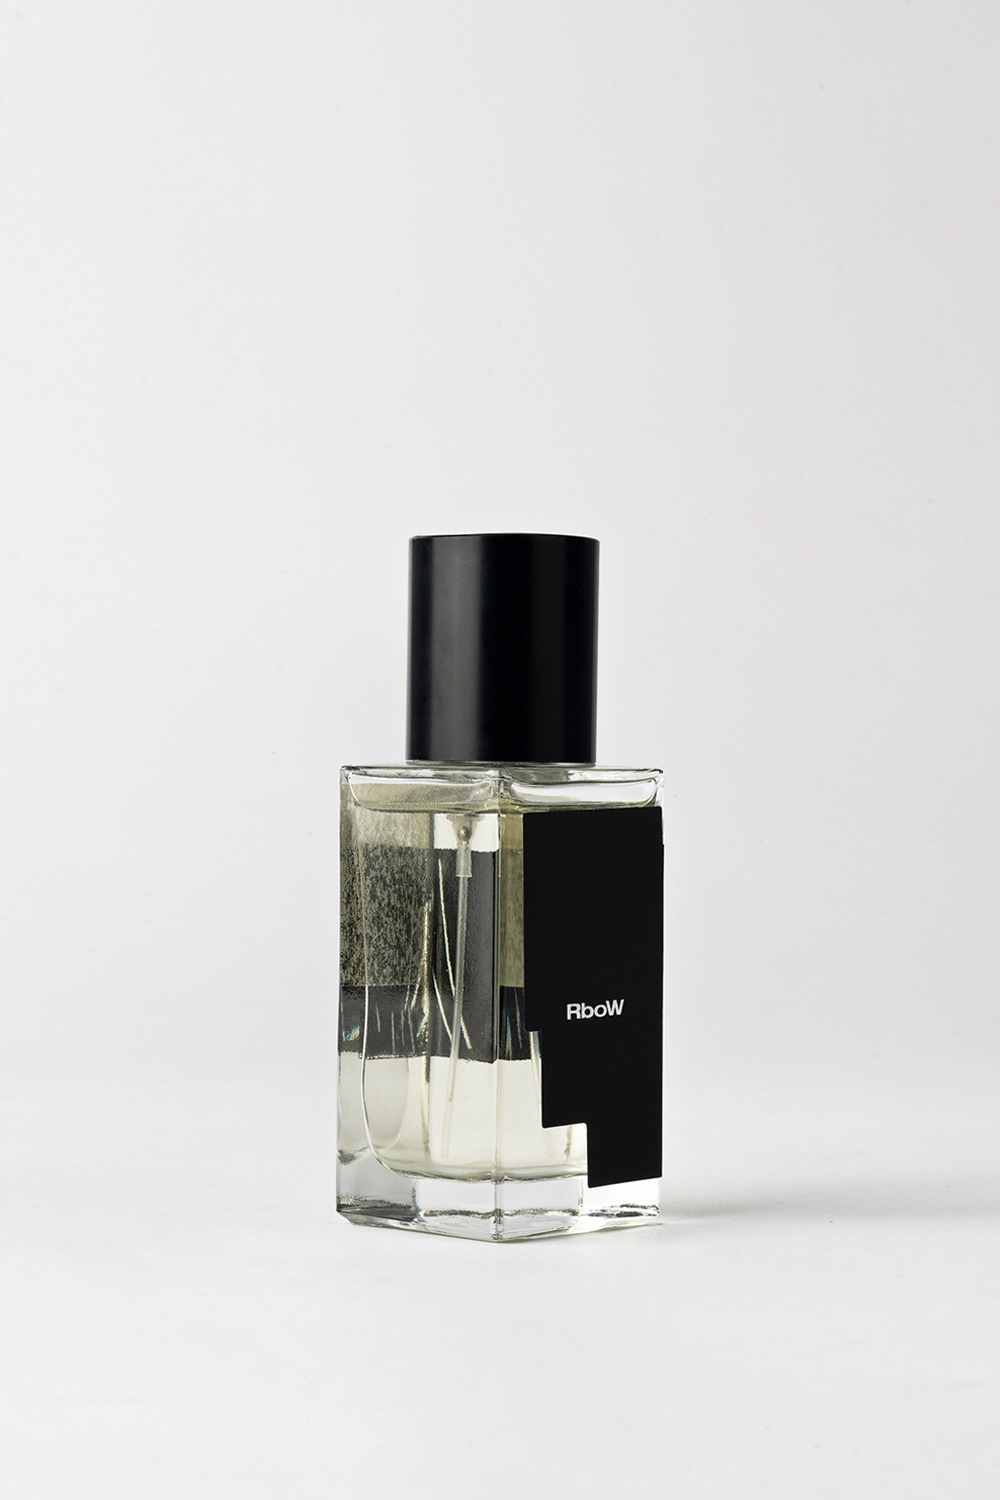 [하트캔들증정] Case Study Eau de Perfume #8 Lights on objet